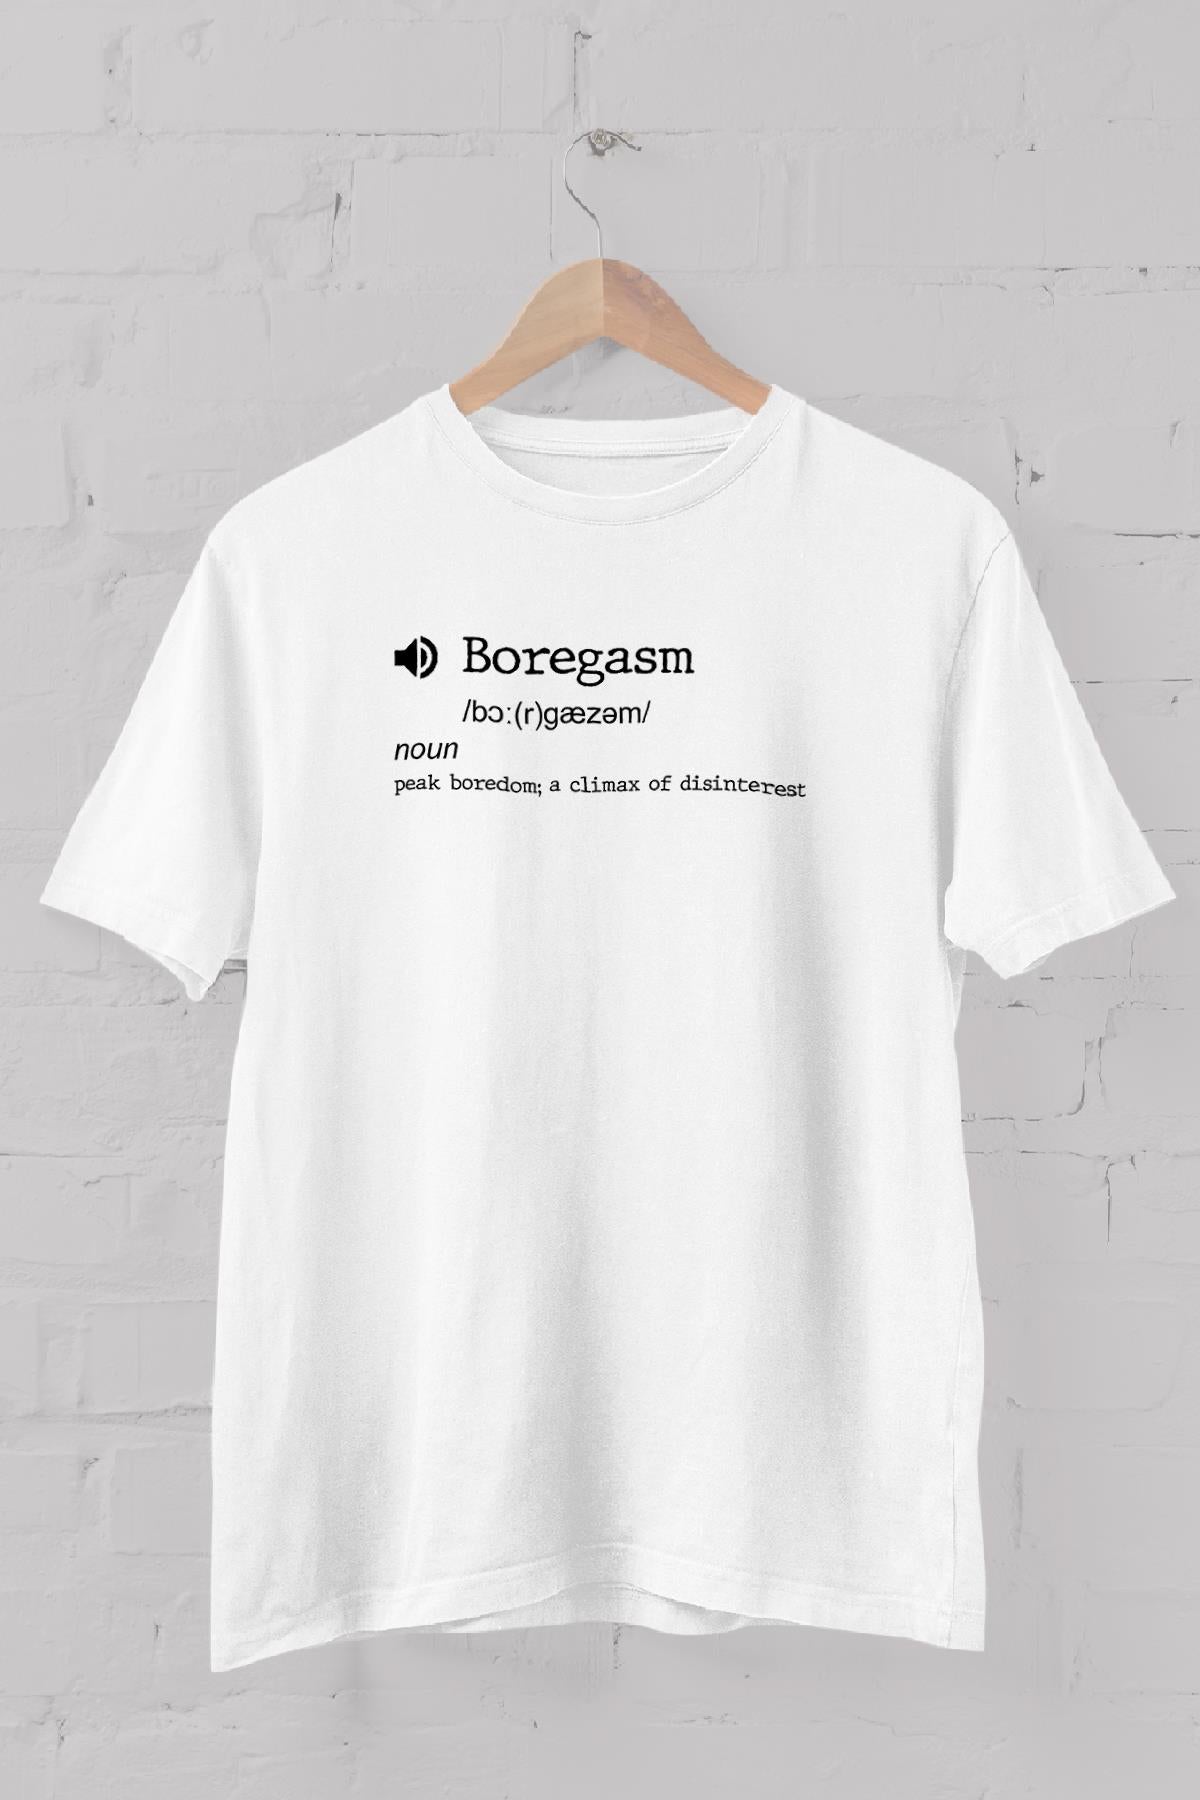 Fixed Words Dictionary "Boregasm" printed Crew Neck men's t -shirt